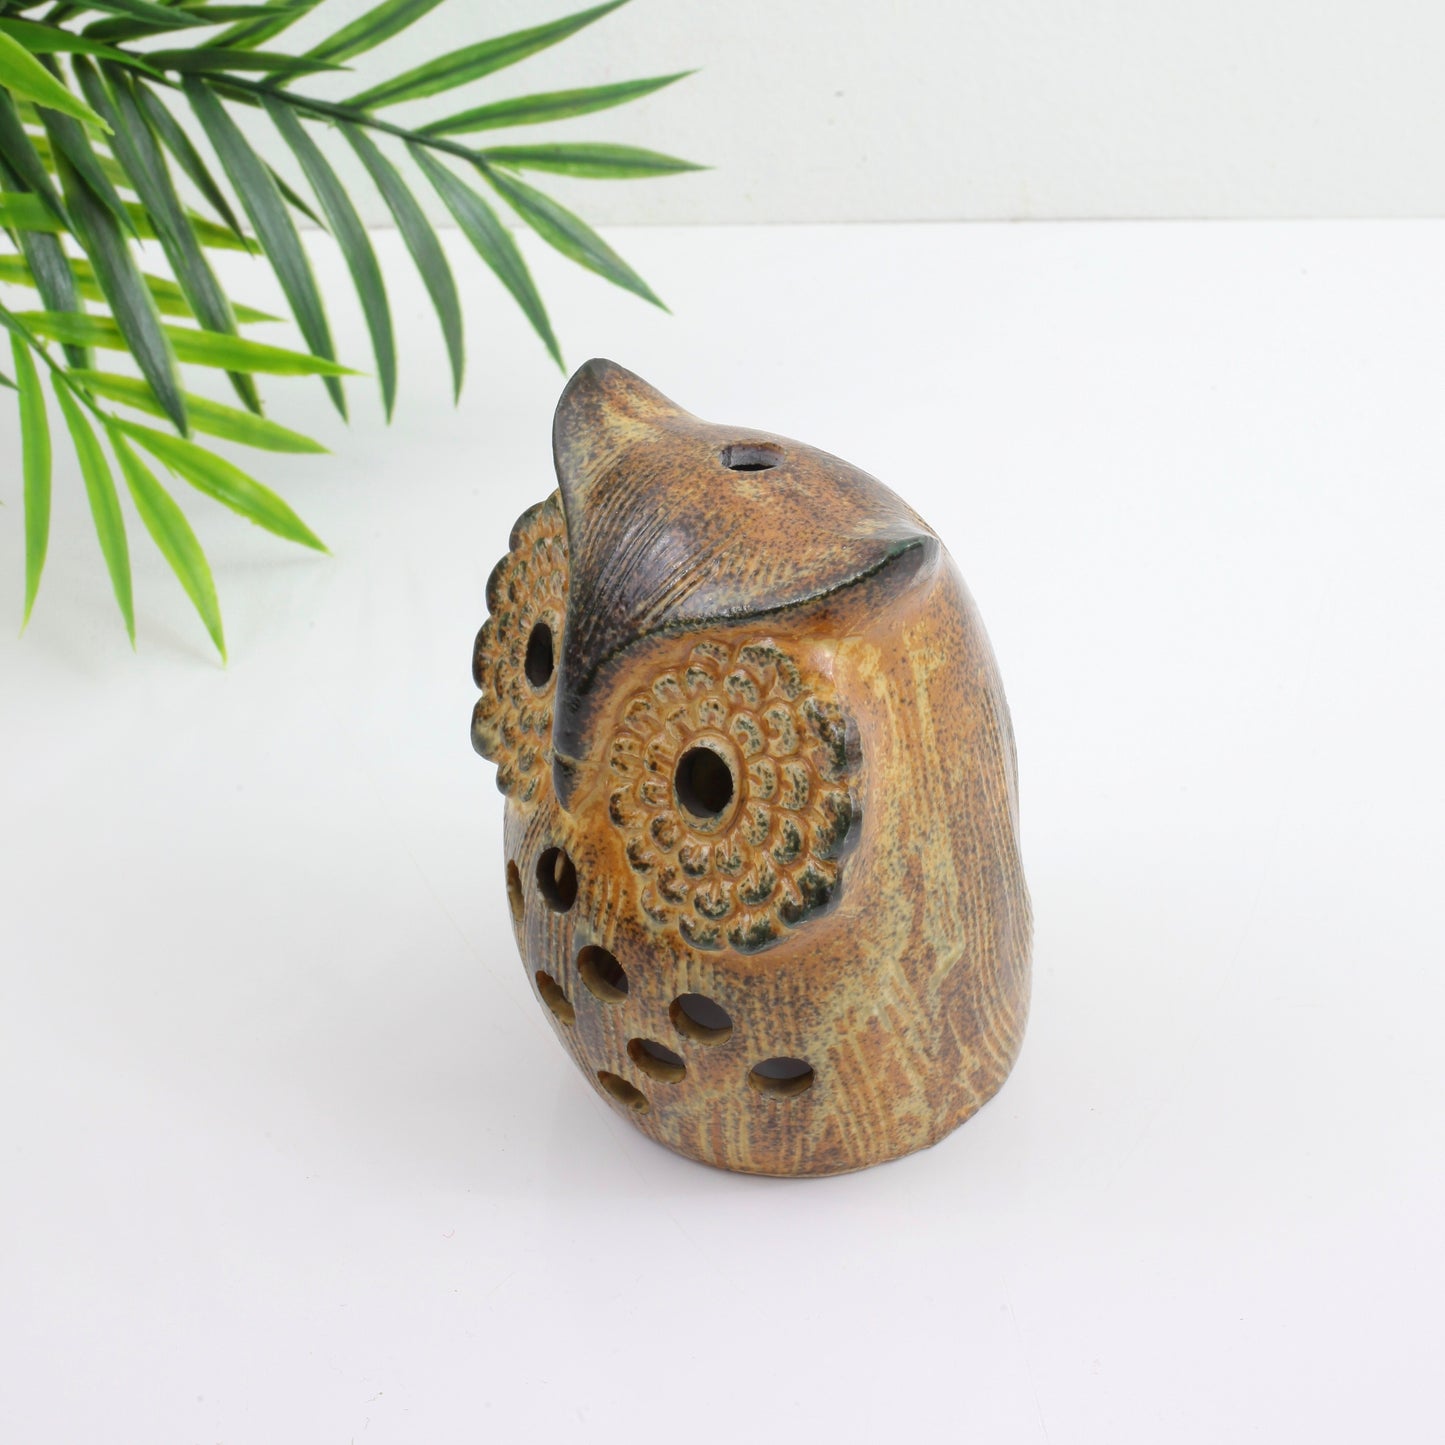 SOLD - Vintage Stoneware Owl Candle Holder & Incense Burner w/ Flower Eyes